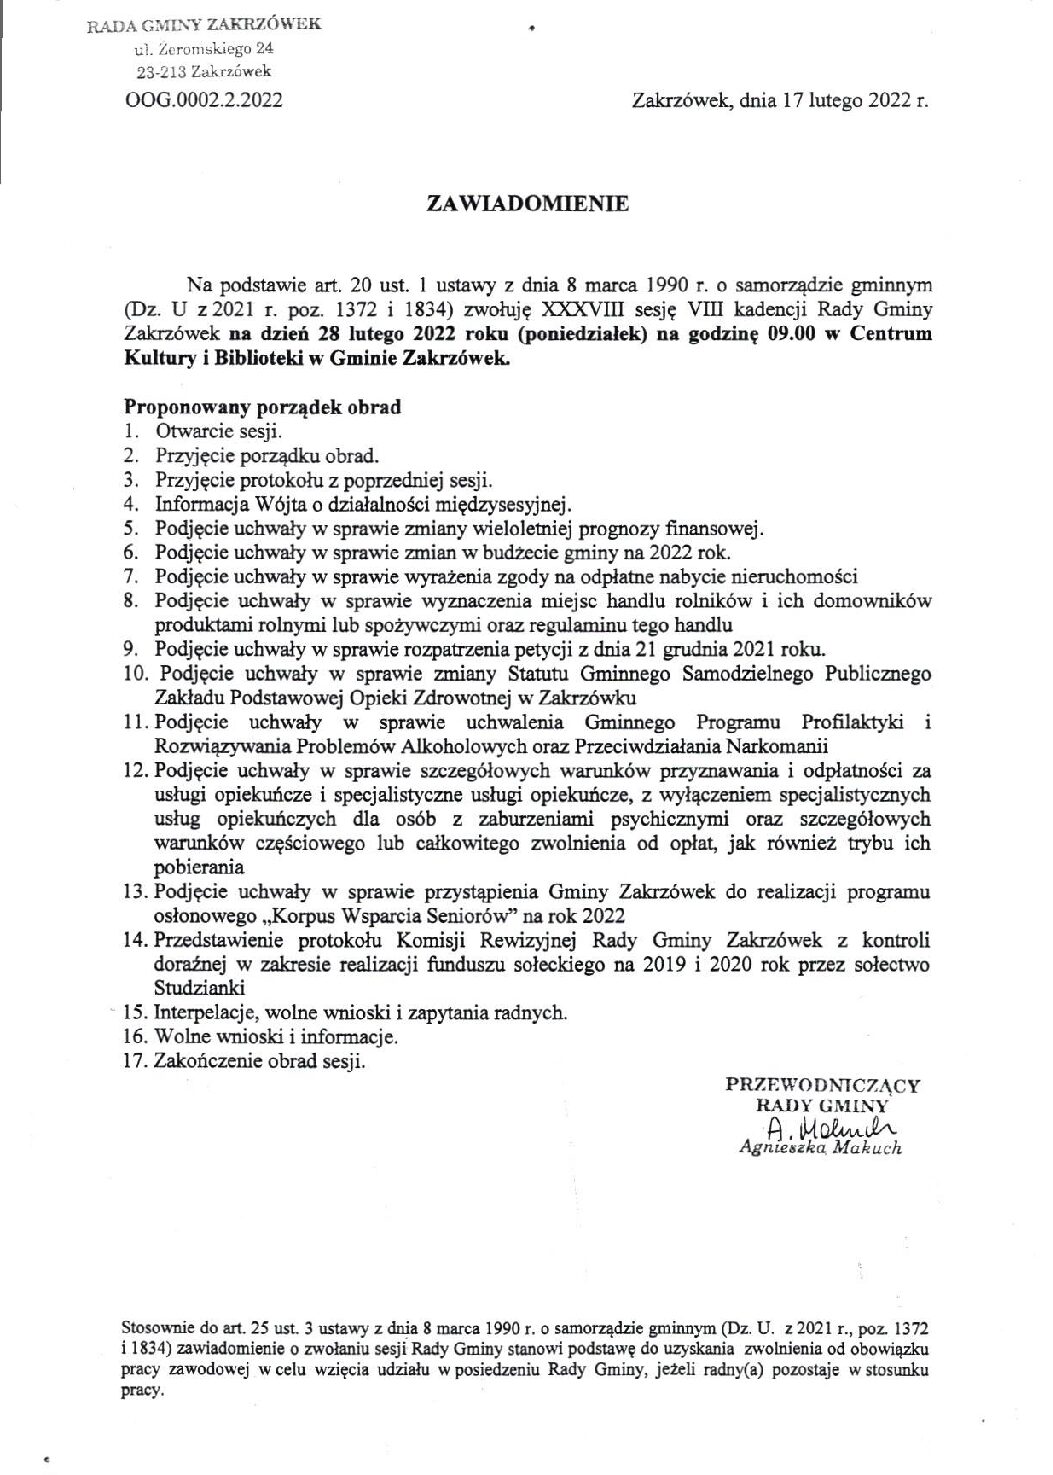 Zawiadomienie o zwołaniu XXXVIII sesji VIII kadencji Rady Gminy Zakrzówek na dzień 28 lutego 2022 r.